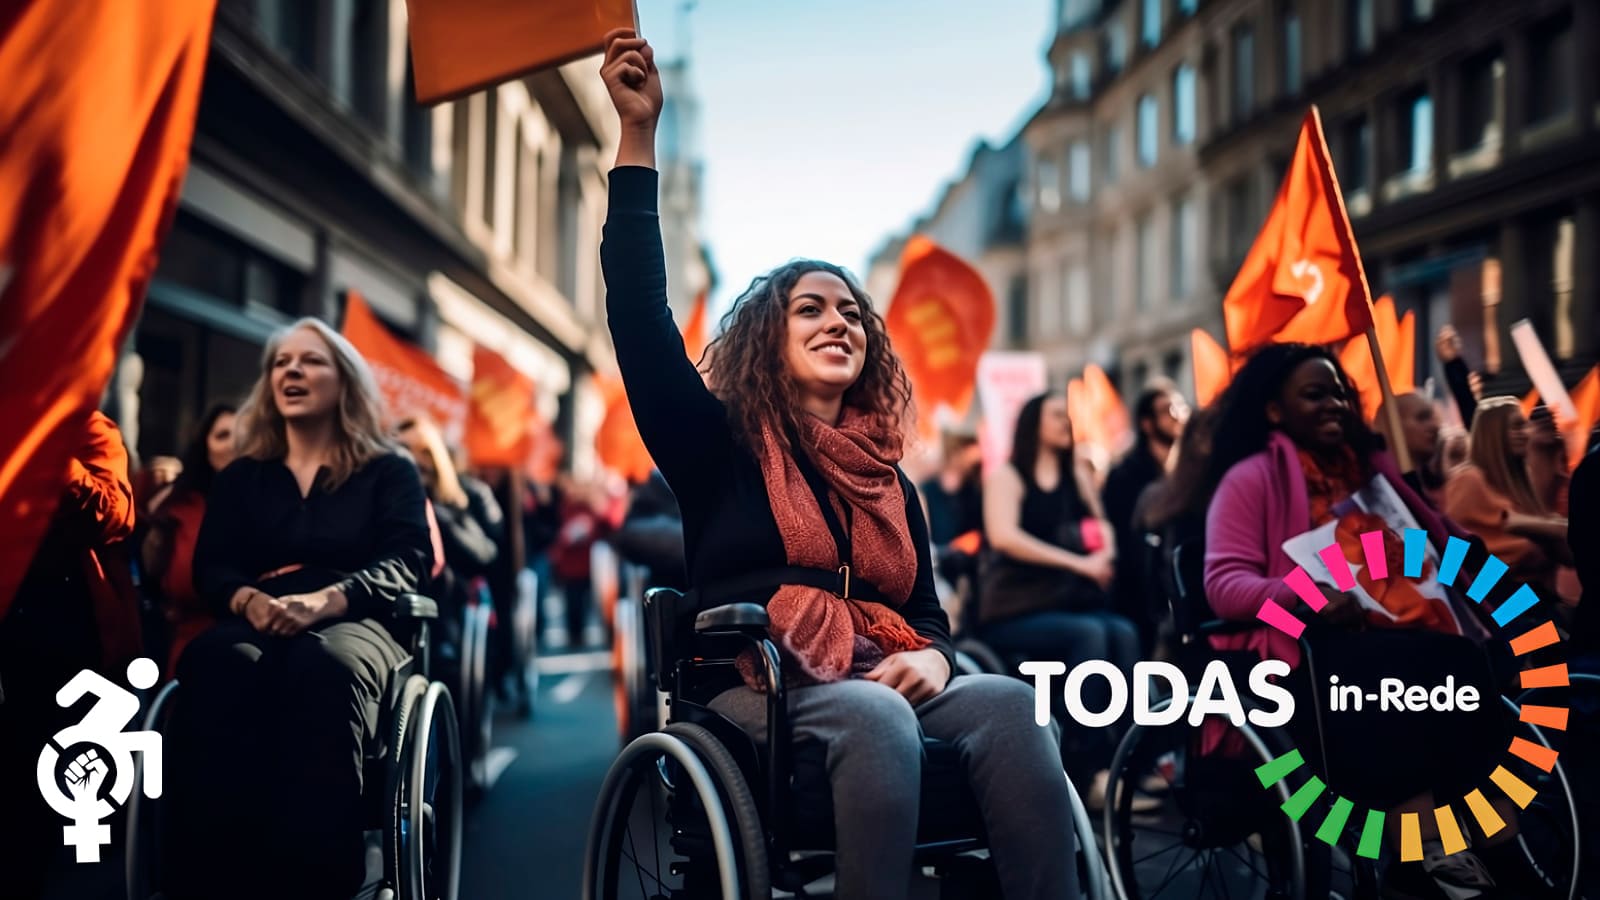 Grupo de mulheres com deficiência em protesto pacífico na rua, bandeiras e cartazes. Símbolo de vênus com punho cerrado e ícone de cadeira de rodas. Logo do Todas in-Rede.